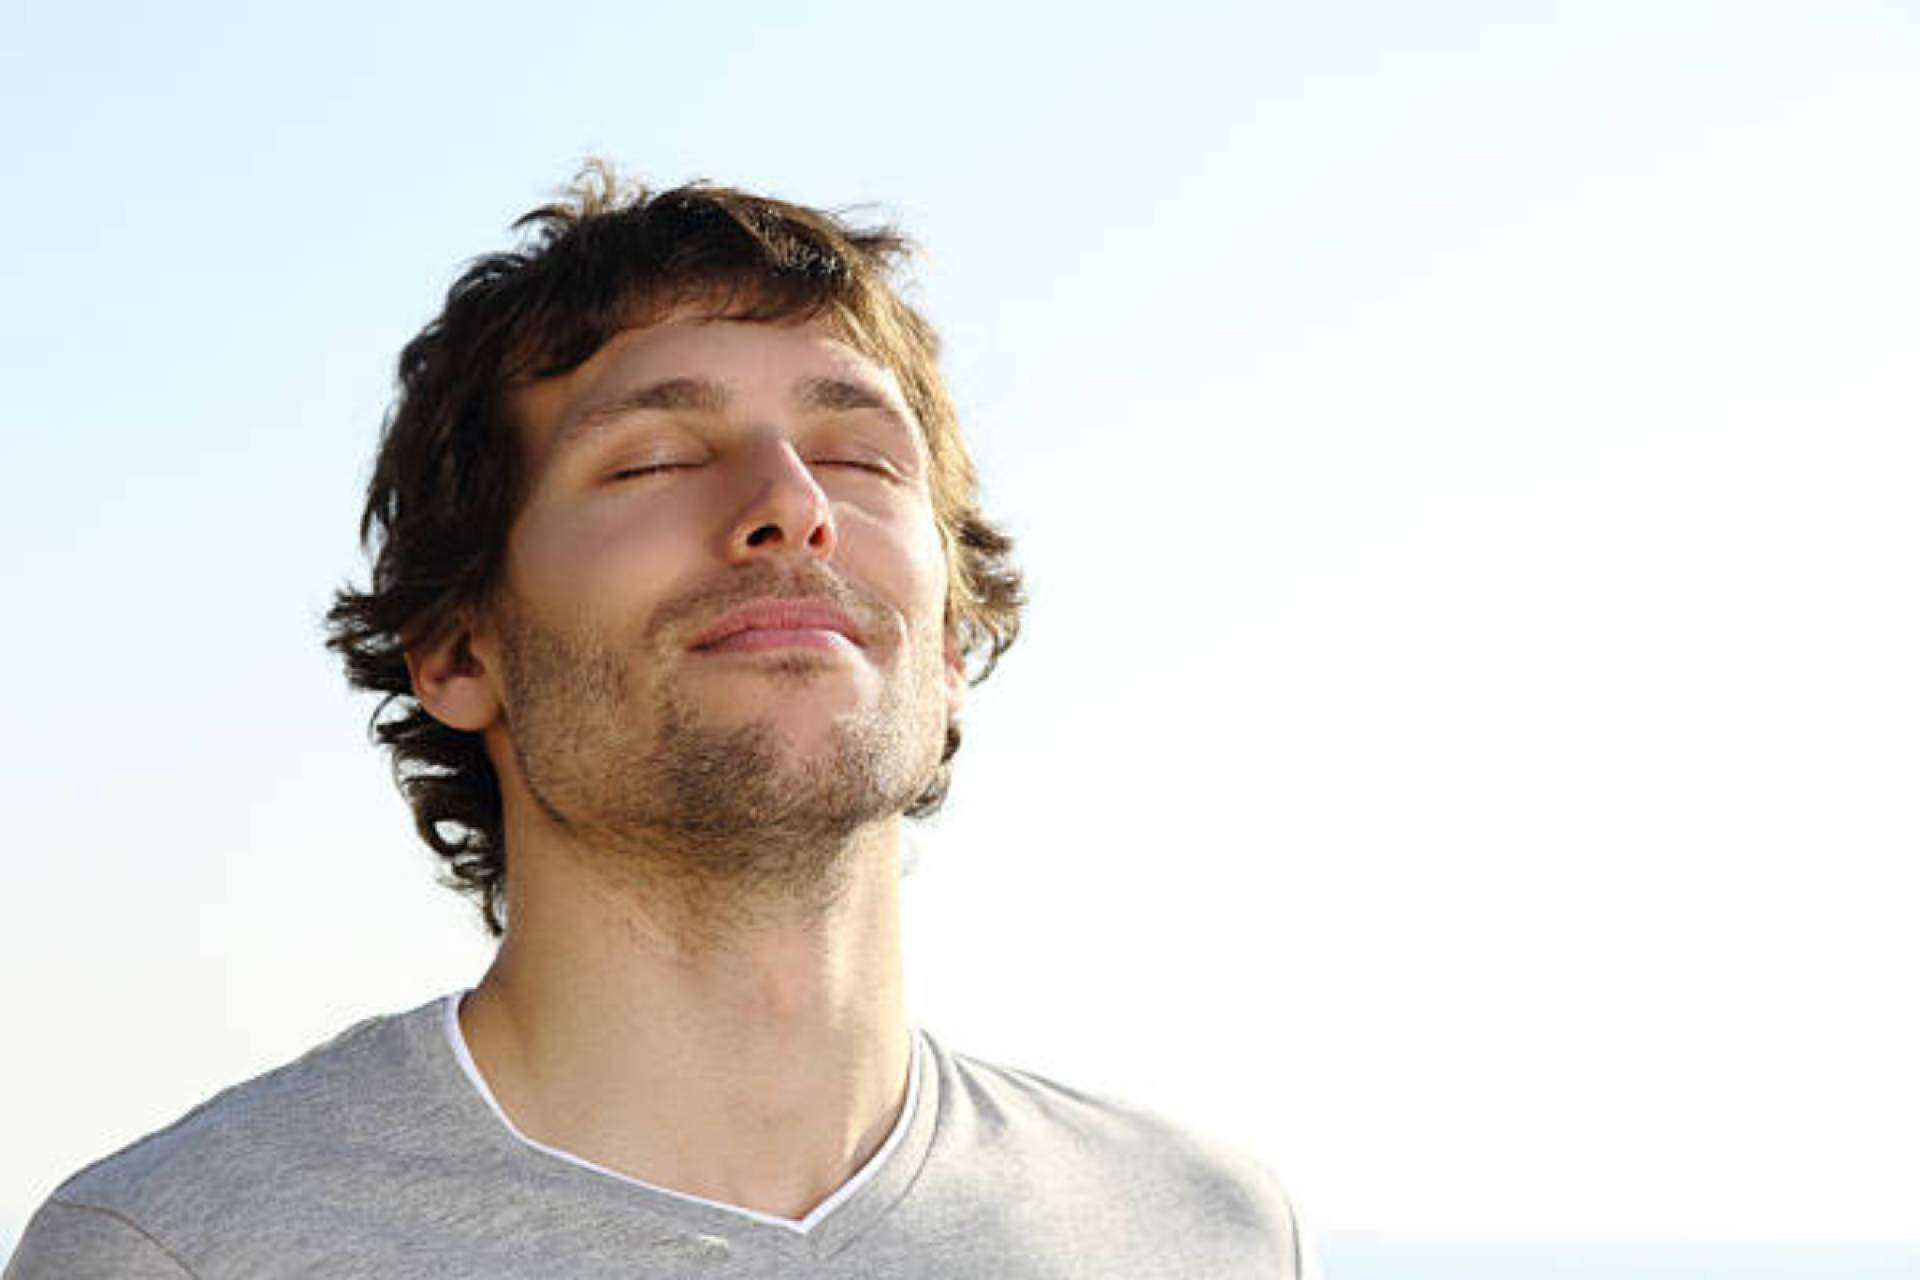  El breathwork incluye distintas técnicas de respiración para aliviar los síntomas del estrés, ansiedad y depresión 